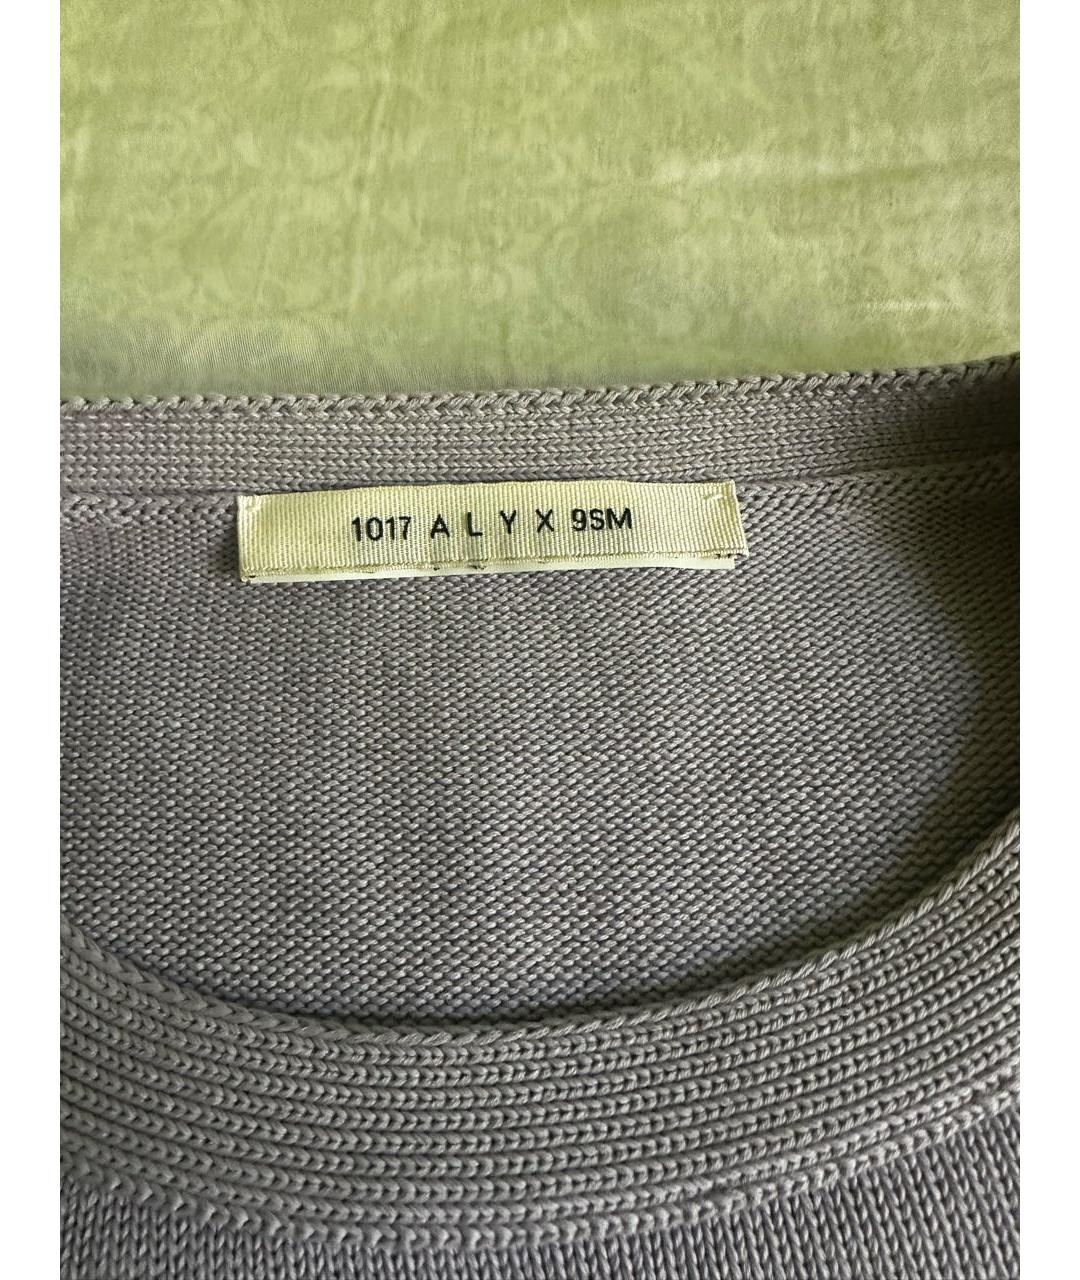 1017 ALYX 9SM Фиолетовый вискозный джемпер / свитер, фото 5